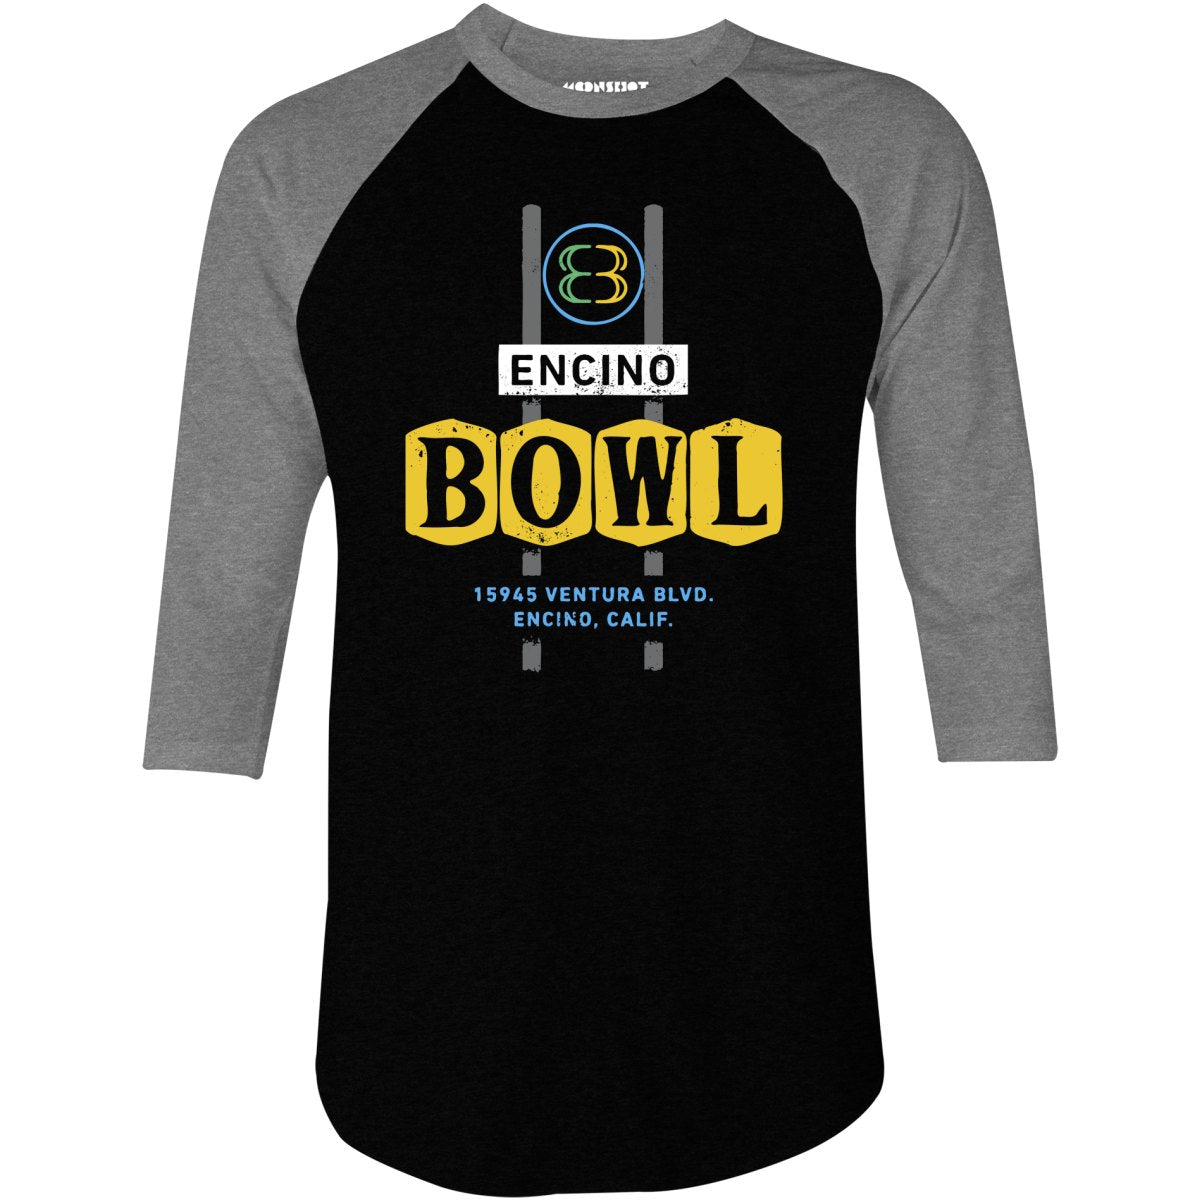 Encino Bowl - Encino, CA - Vintage Bowling Alley - 3/4 Sleeve Raglan T-Shirt